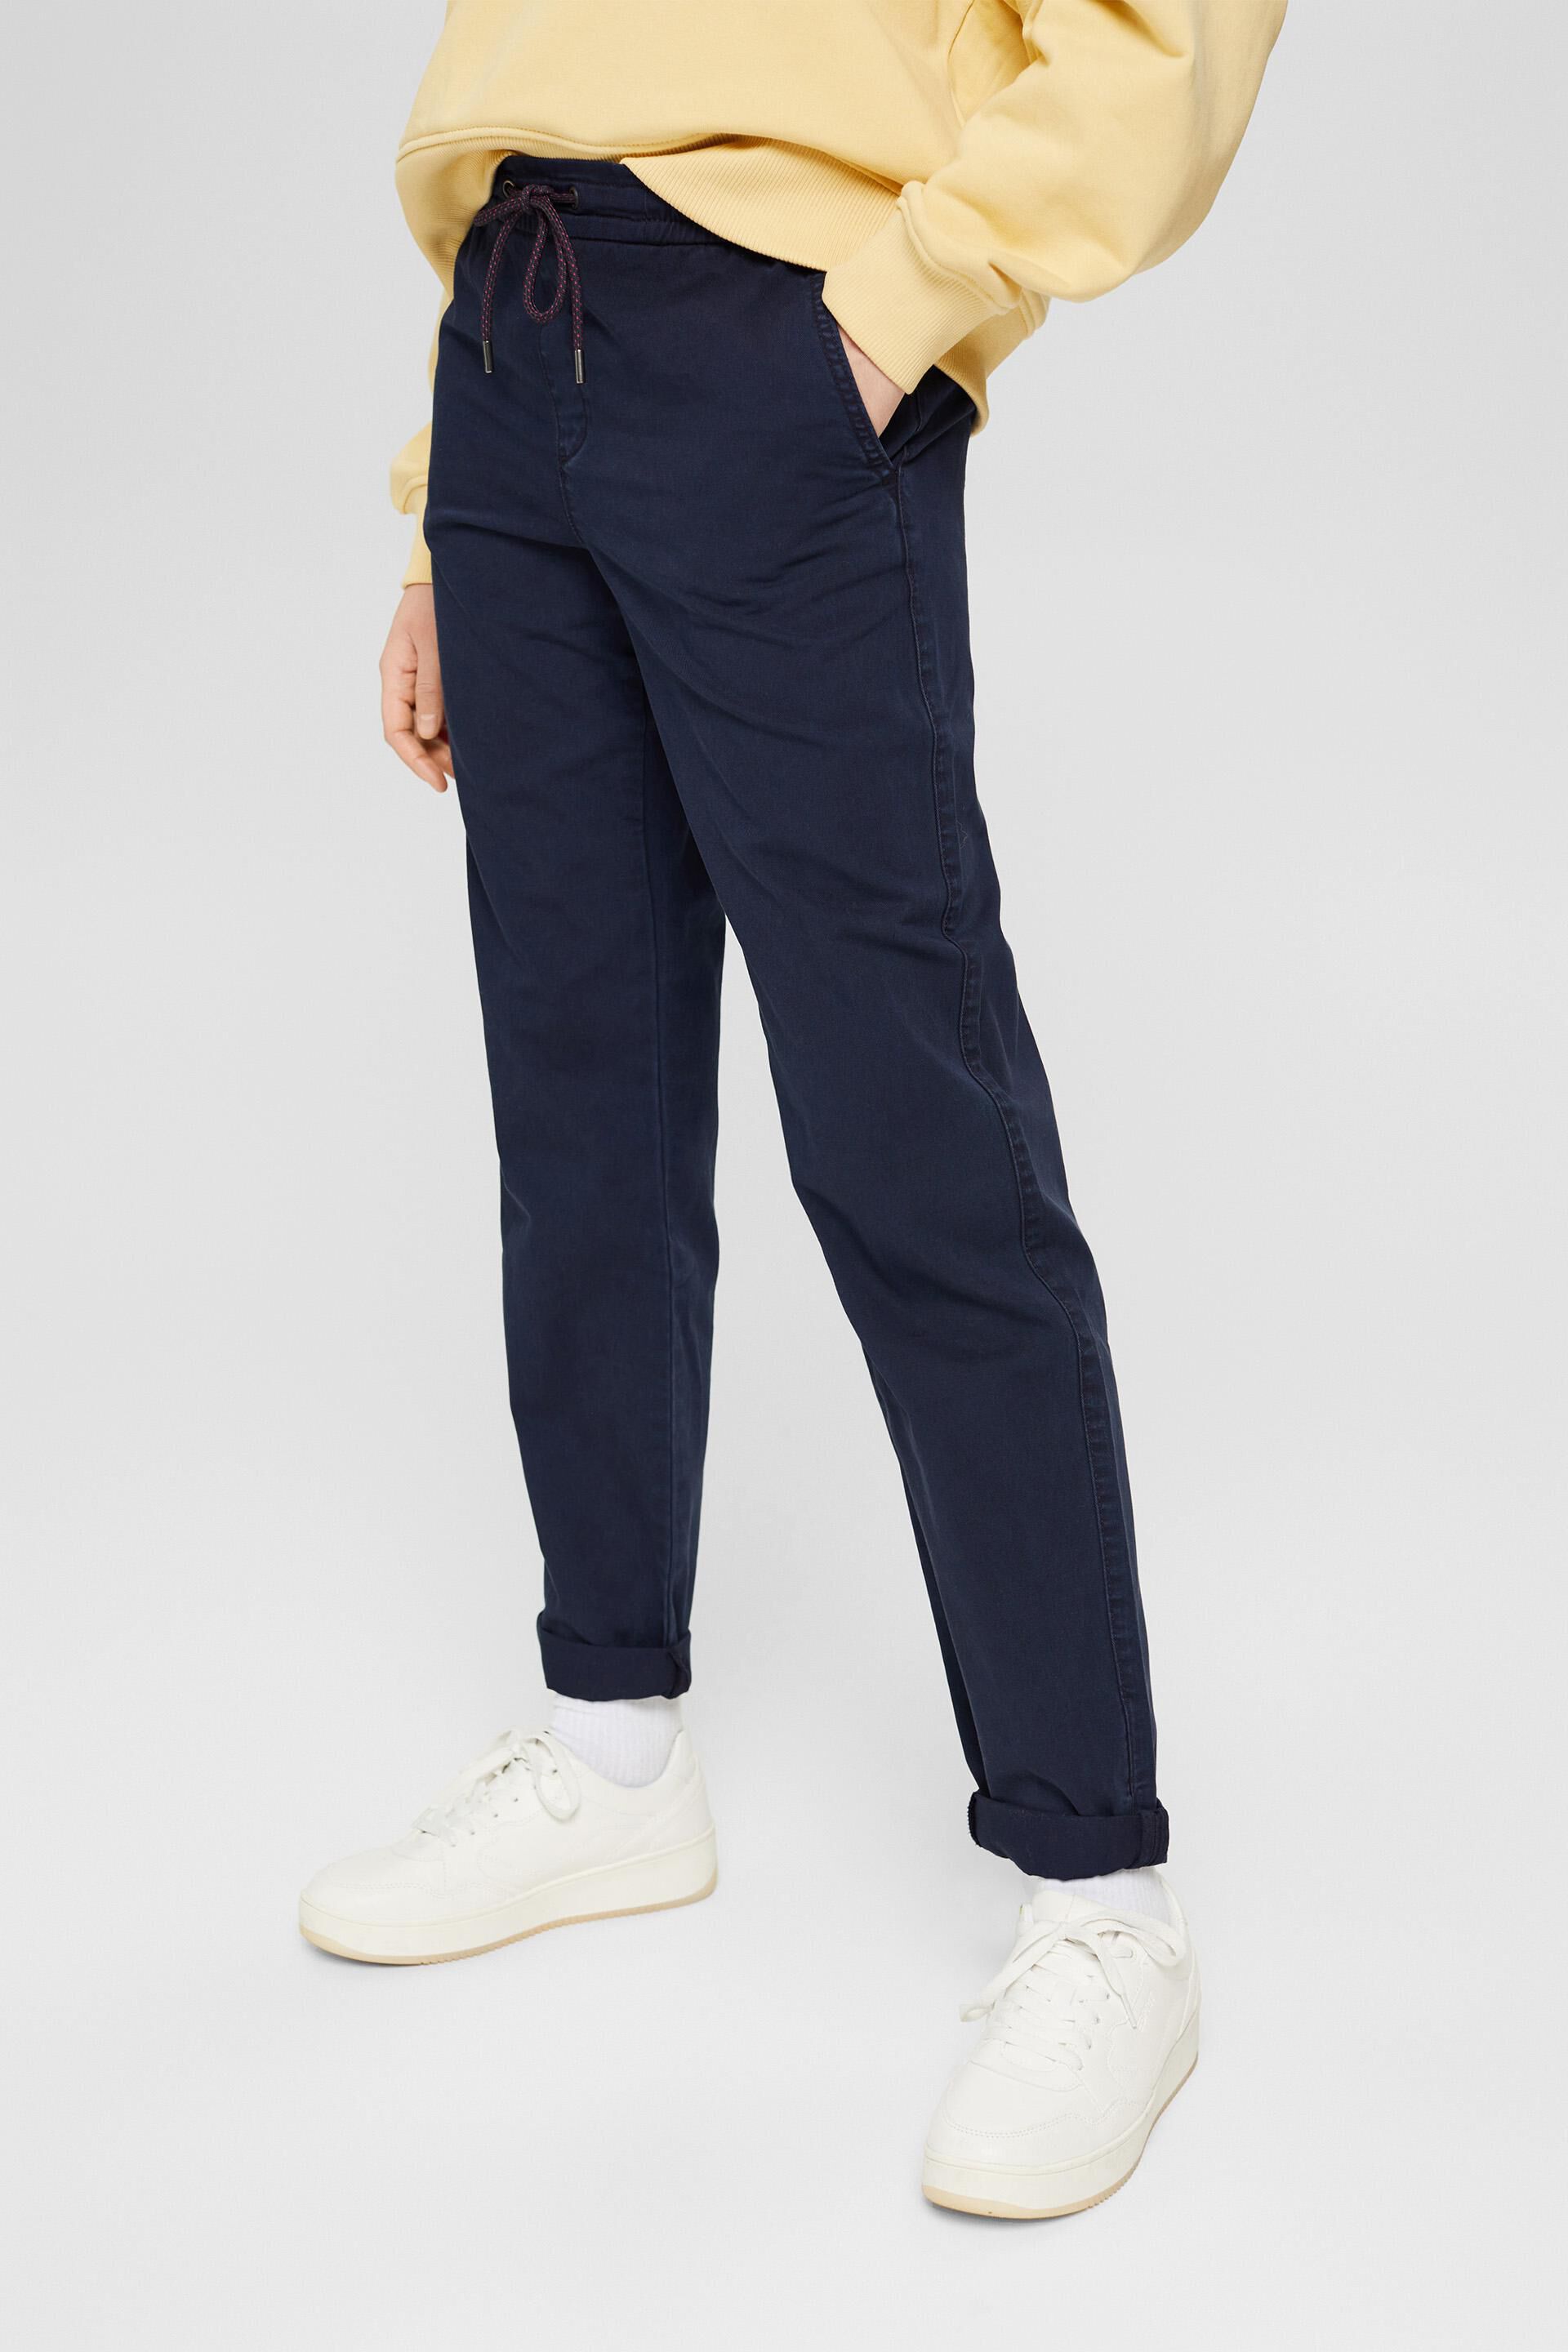 pantalons en chinos voor Skinny broeken Esprit Twill Stretch X21101 Broek in het Bruin Dames Kleding voor voor Broeken 